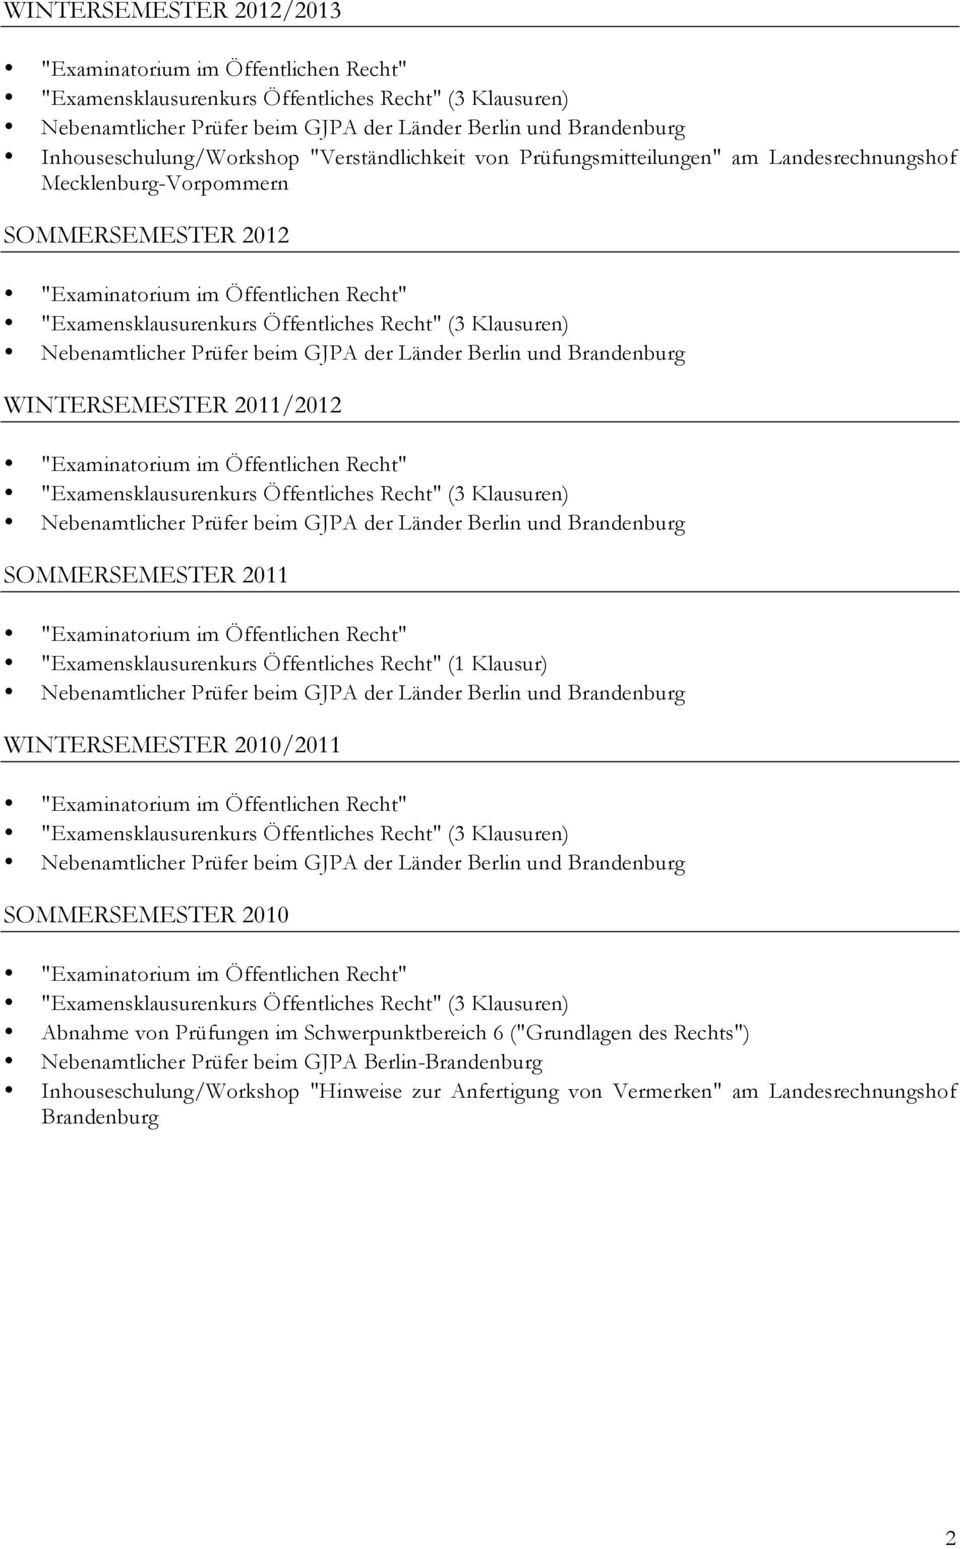 (1 Klausur) WINTERSEMESTER 2010/2011 SOMMERSEMESTER 2010 Abnahme von Prüfungen im Schwerpunktbereich 6 ("Grundlagen des Rechts")